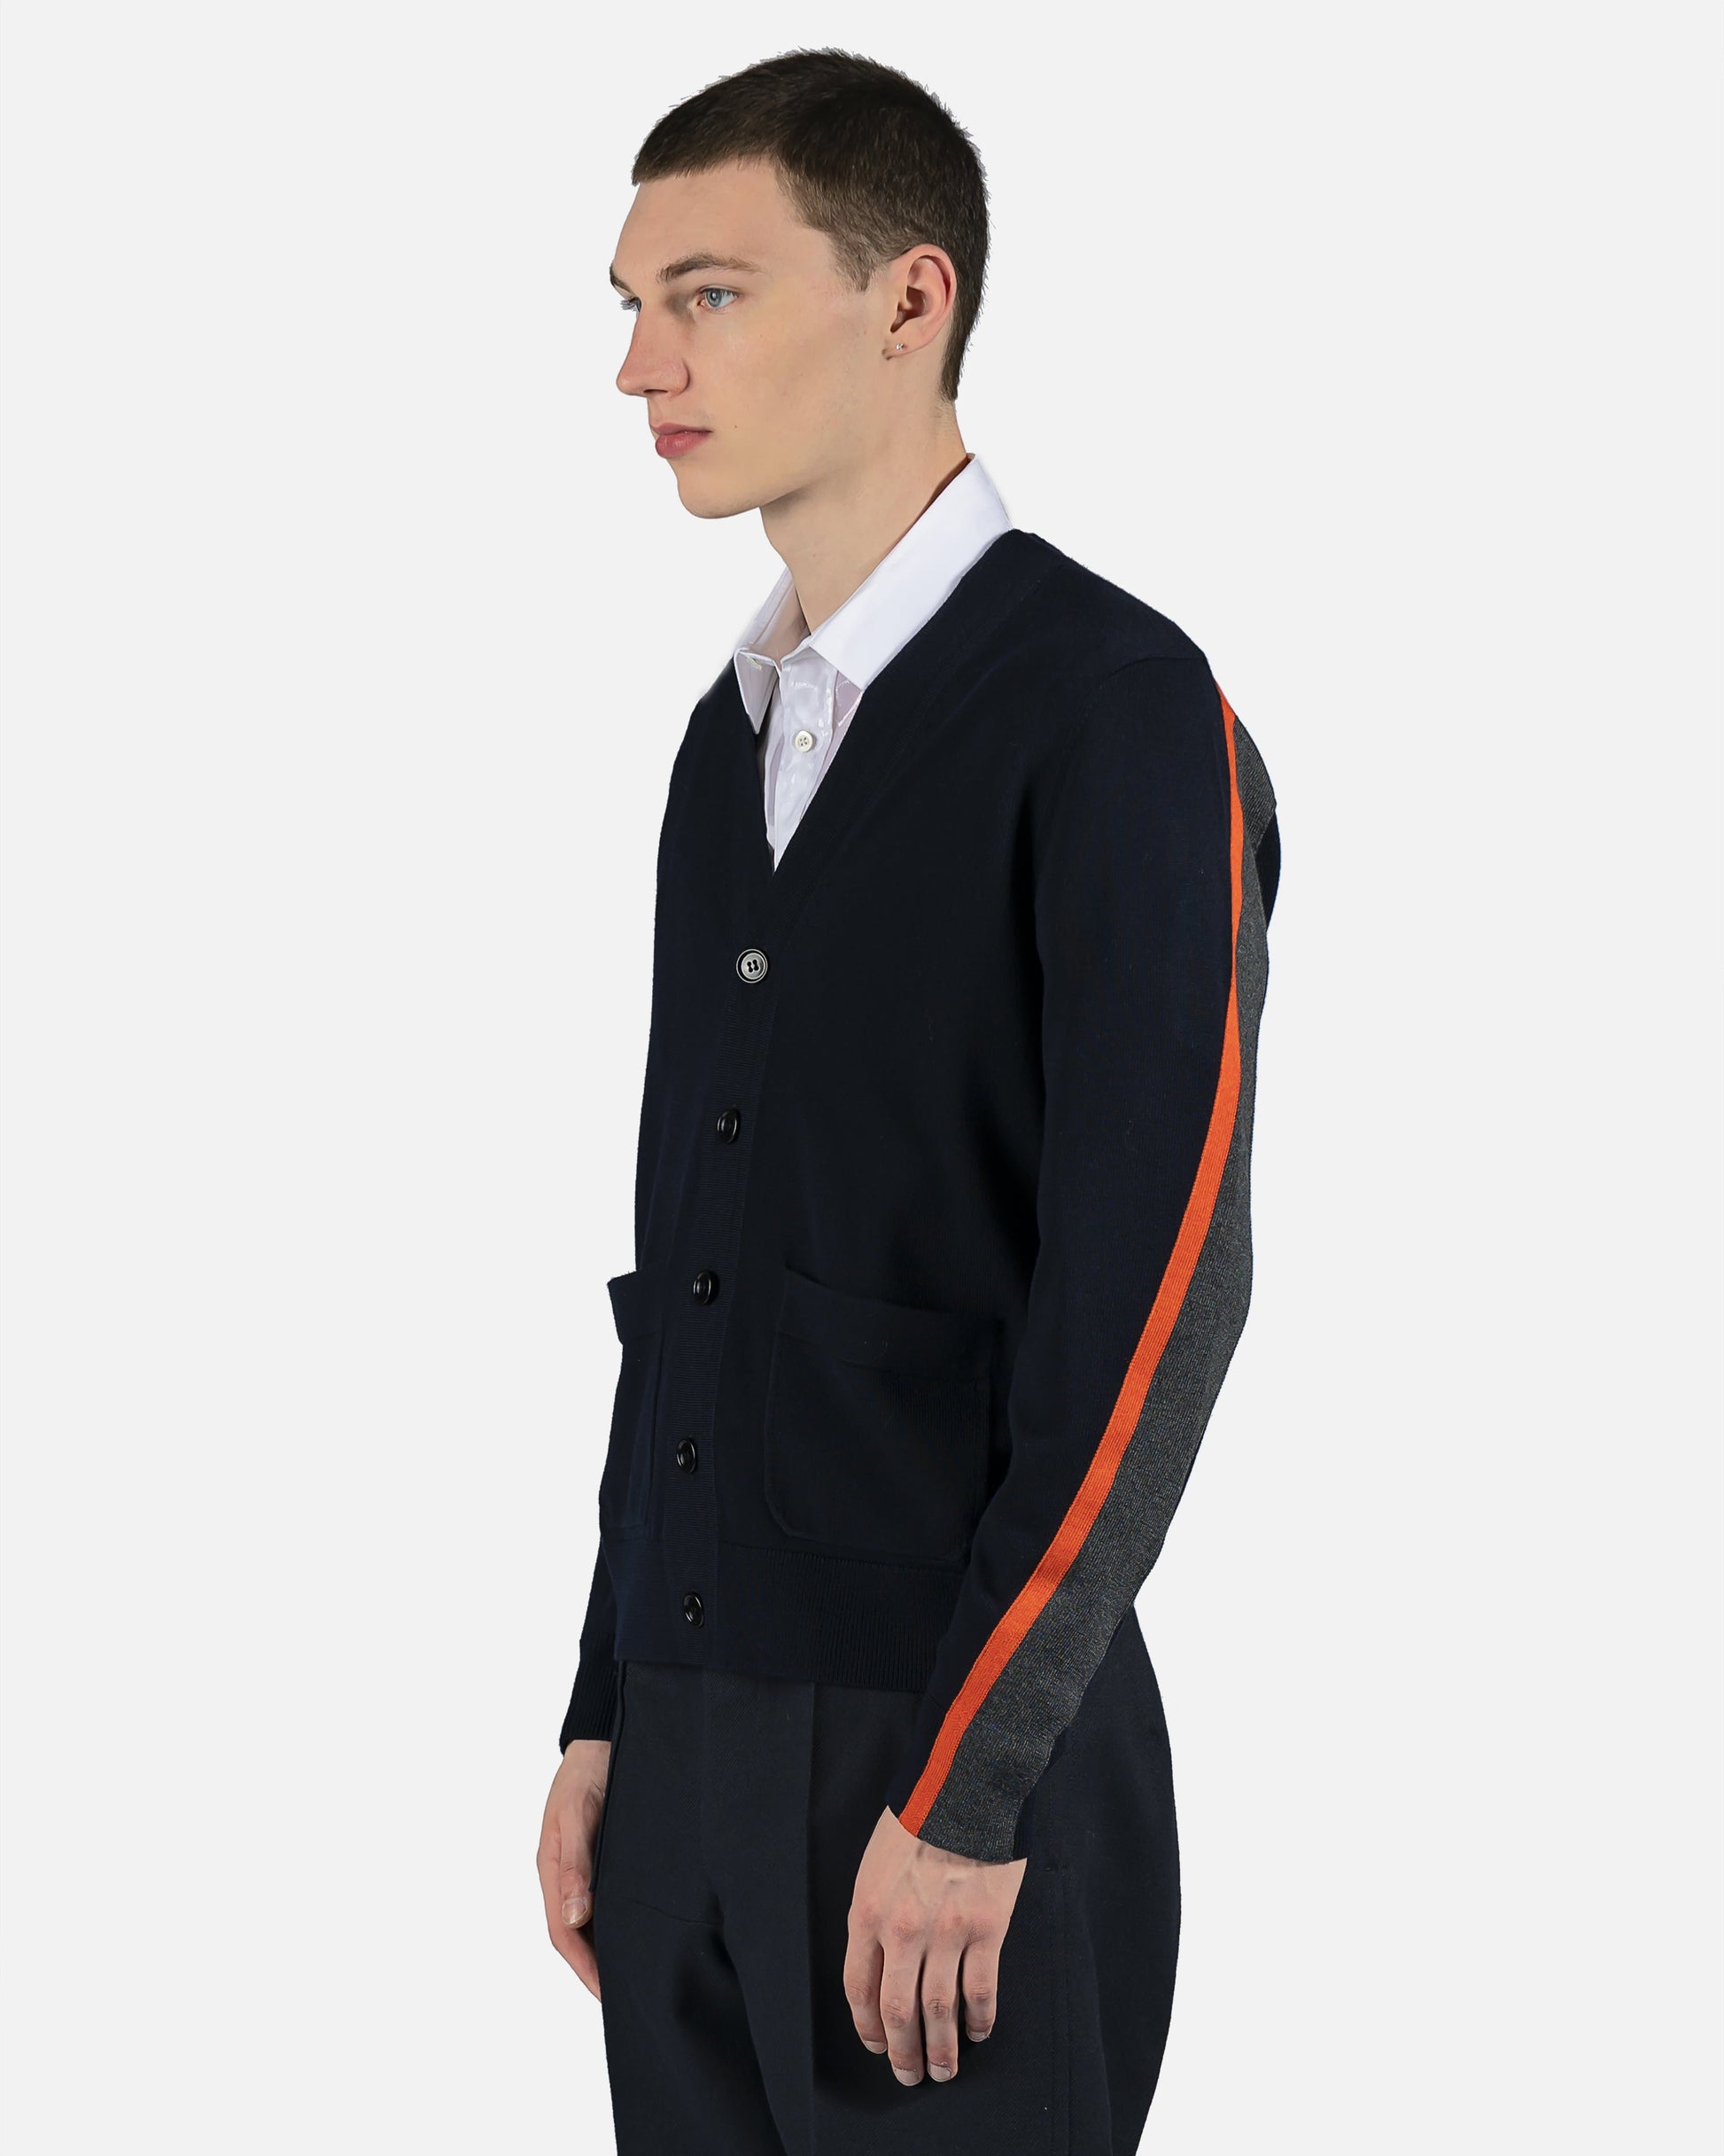 Dries Van Noten mens sweater Tapers Striped Cardigan in Navy/Orange